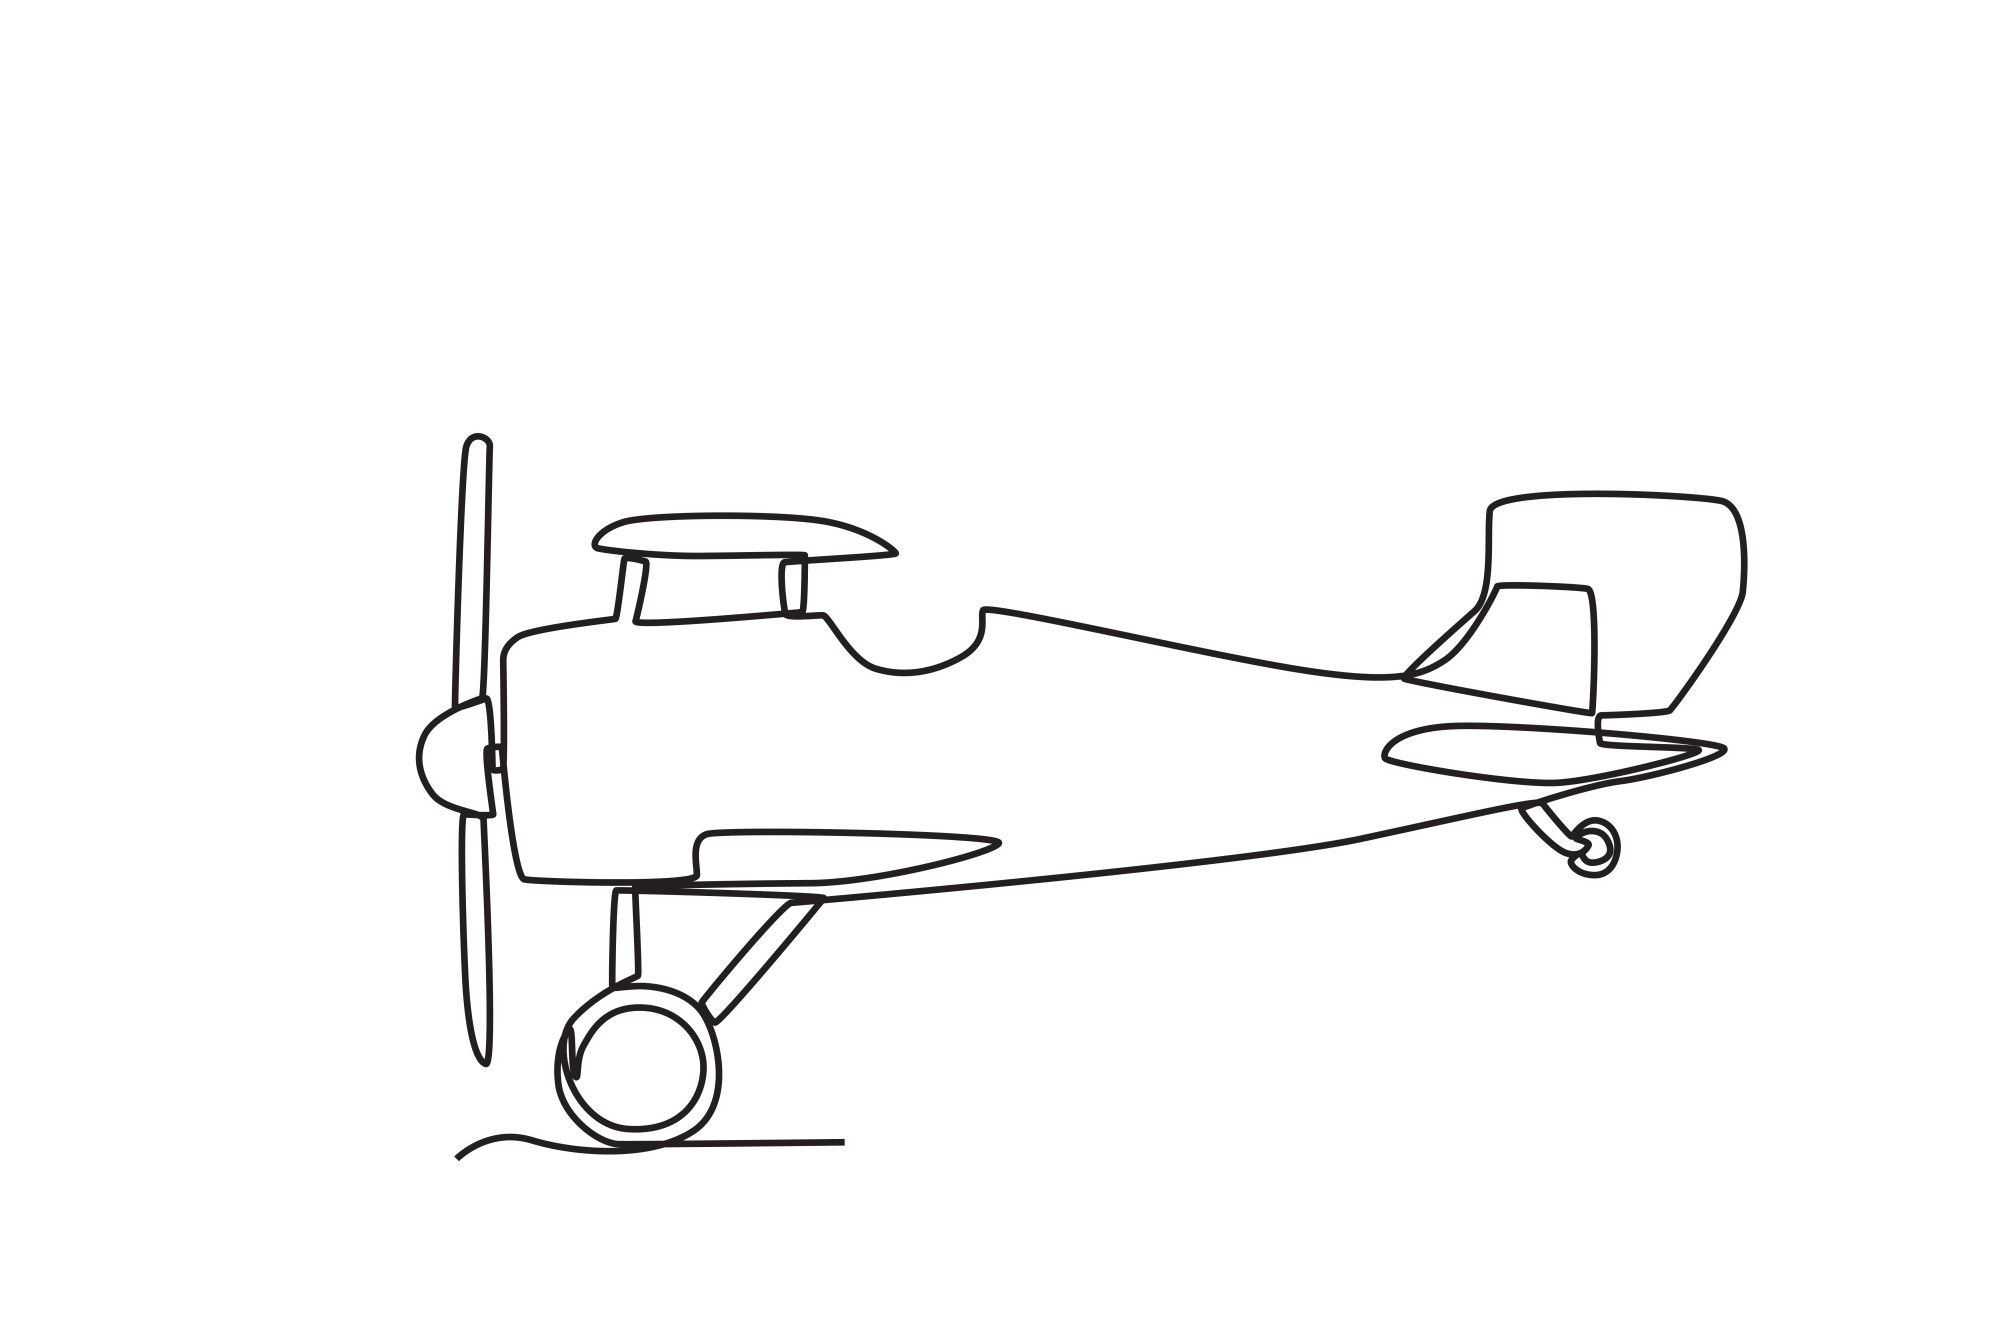 Раскраска для детей: самолётик с пропеллером